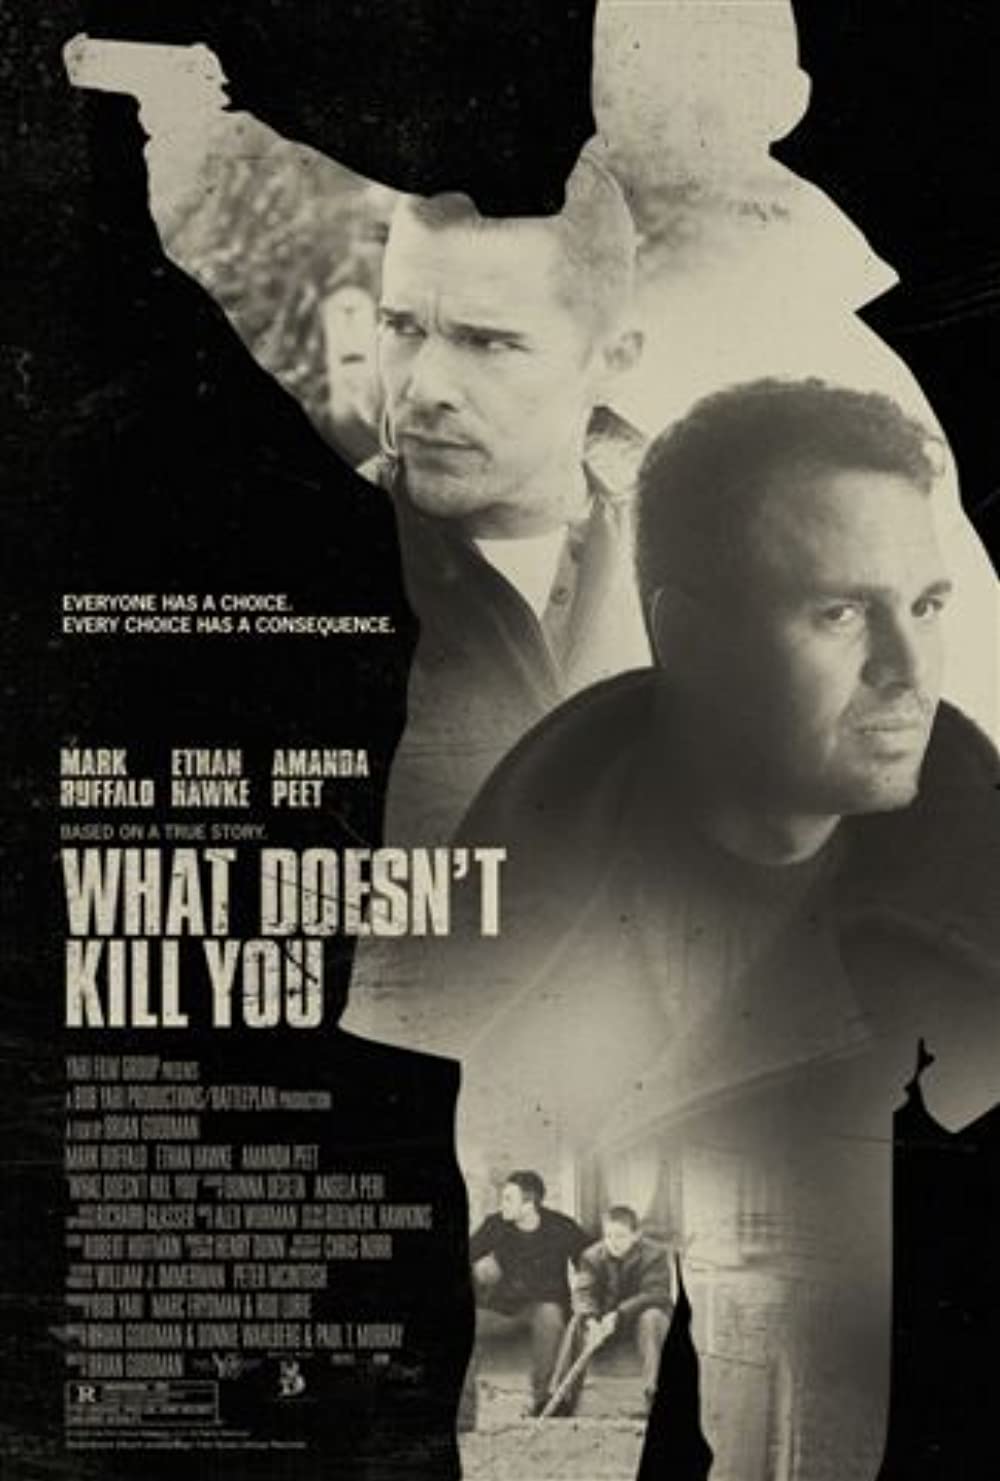 Filmbeschreibung zu What Doesn't Kill You